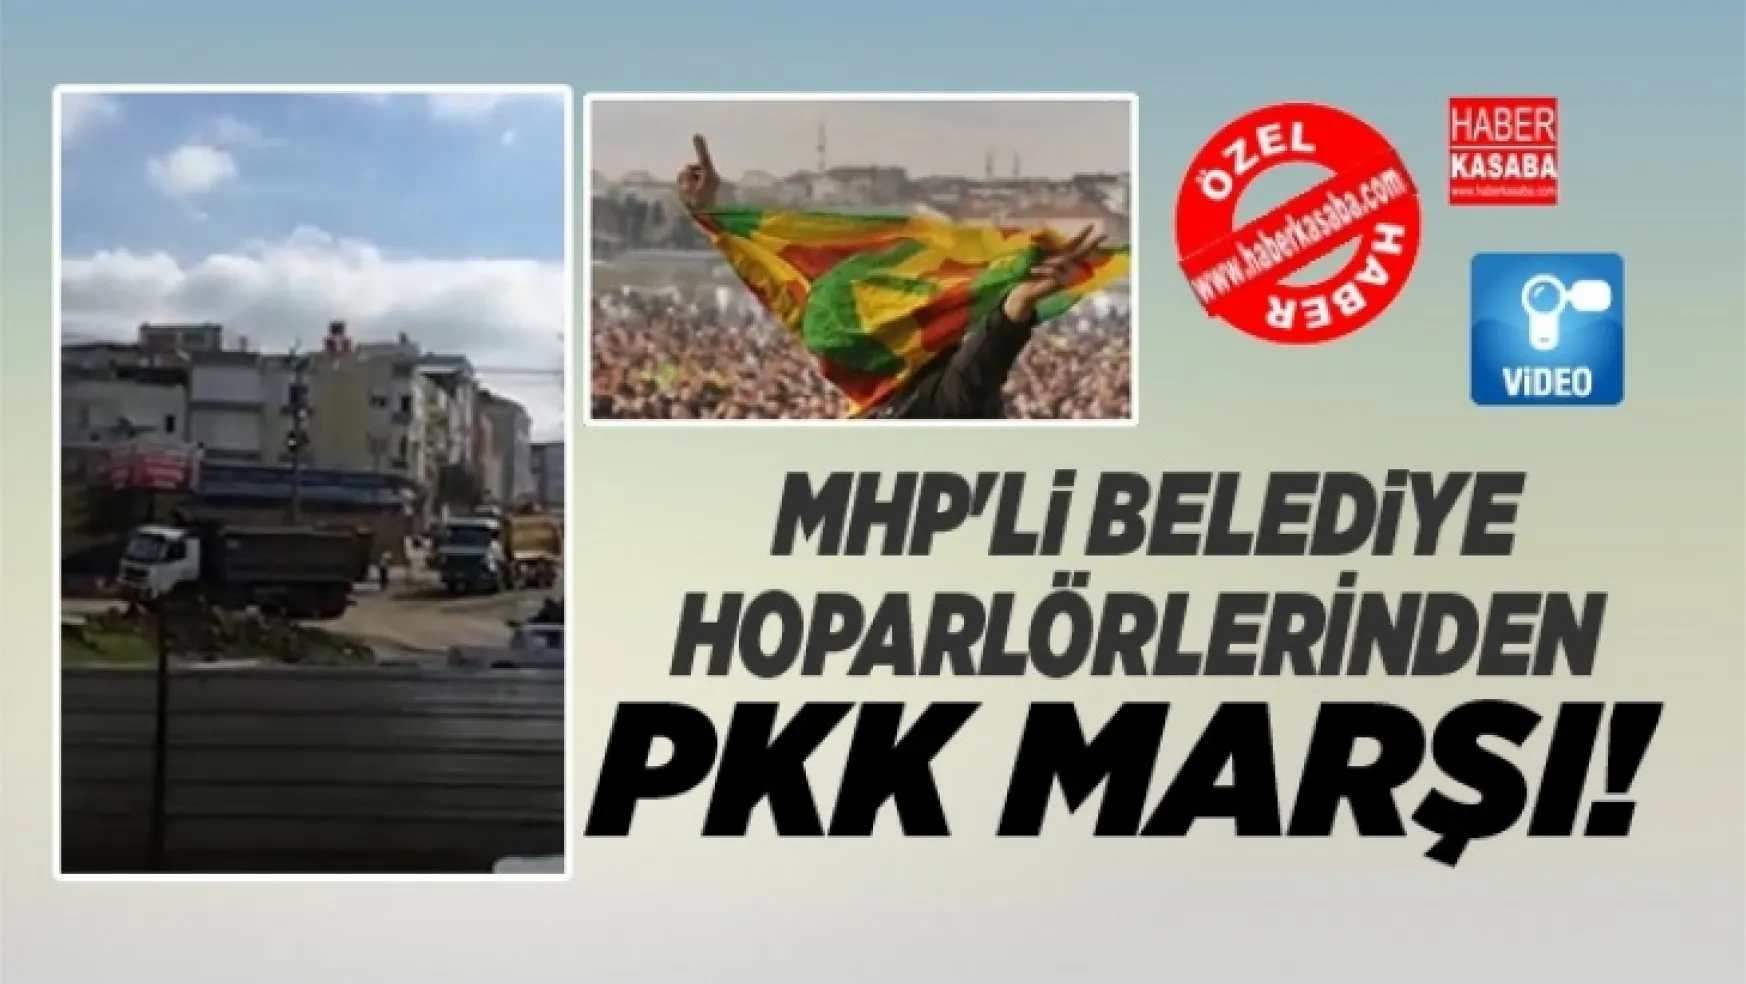 MHP'li belediye hoparlöründen pkk marşı çalındı